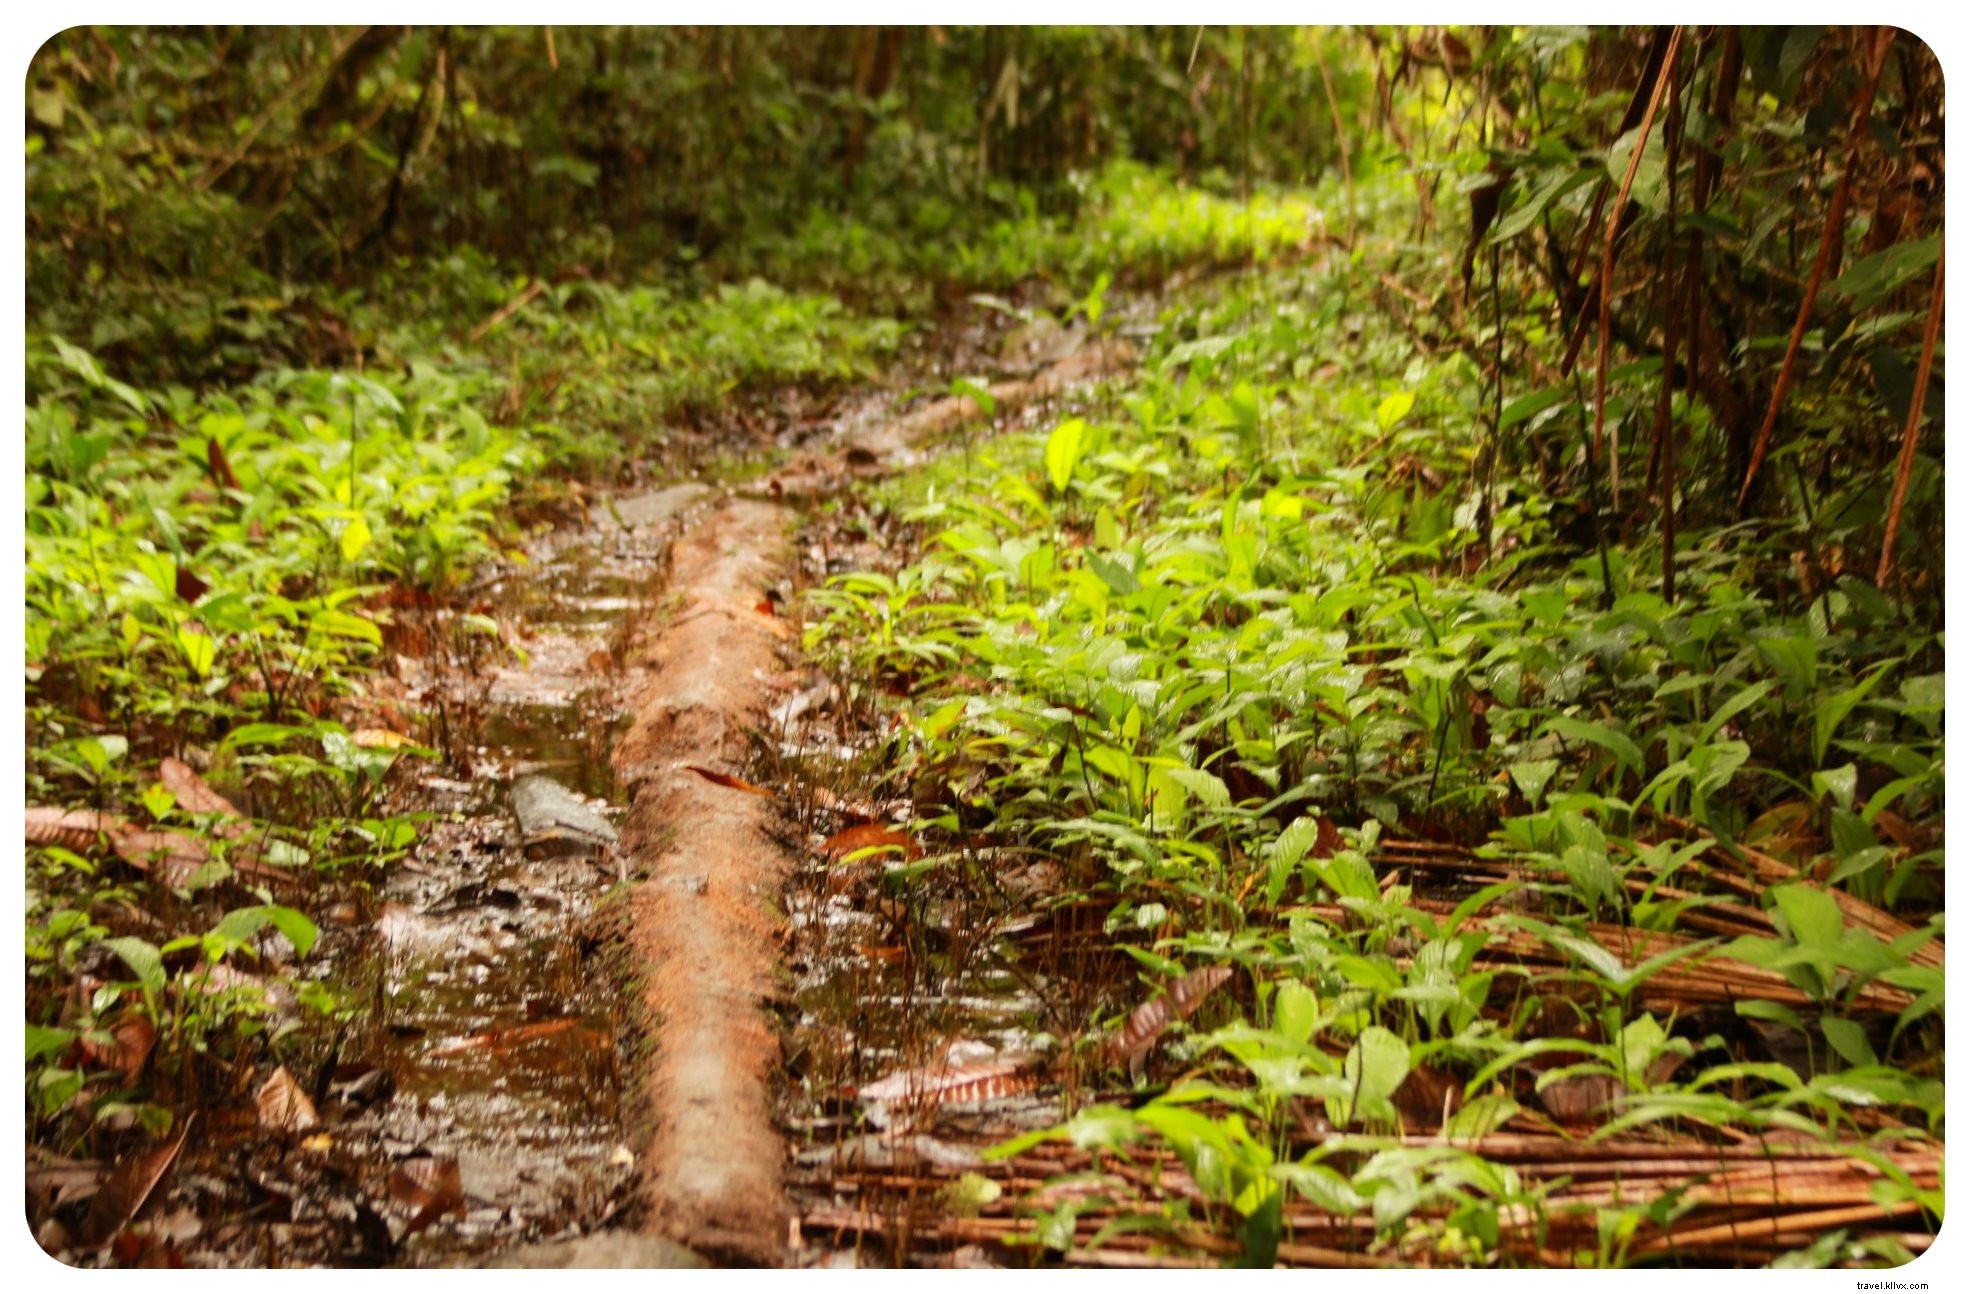 Mencari Setan Batin Saya Di Hutan Kolombia:Kencan Dengan Ayahuasca